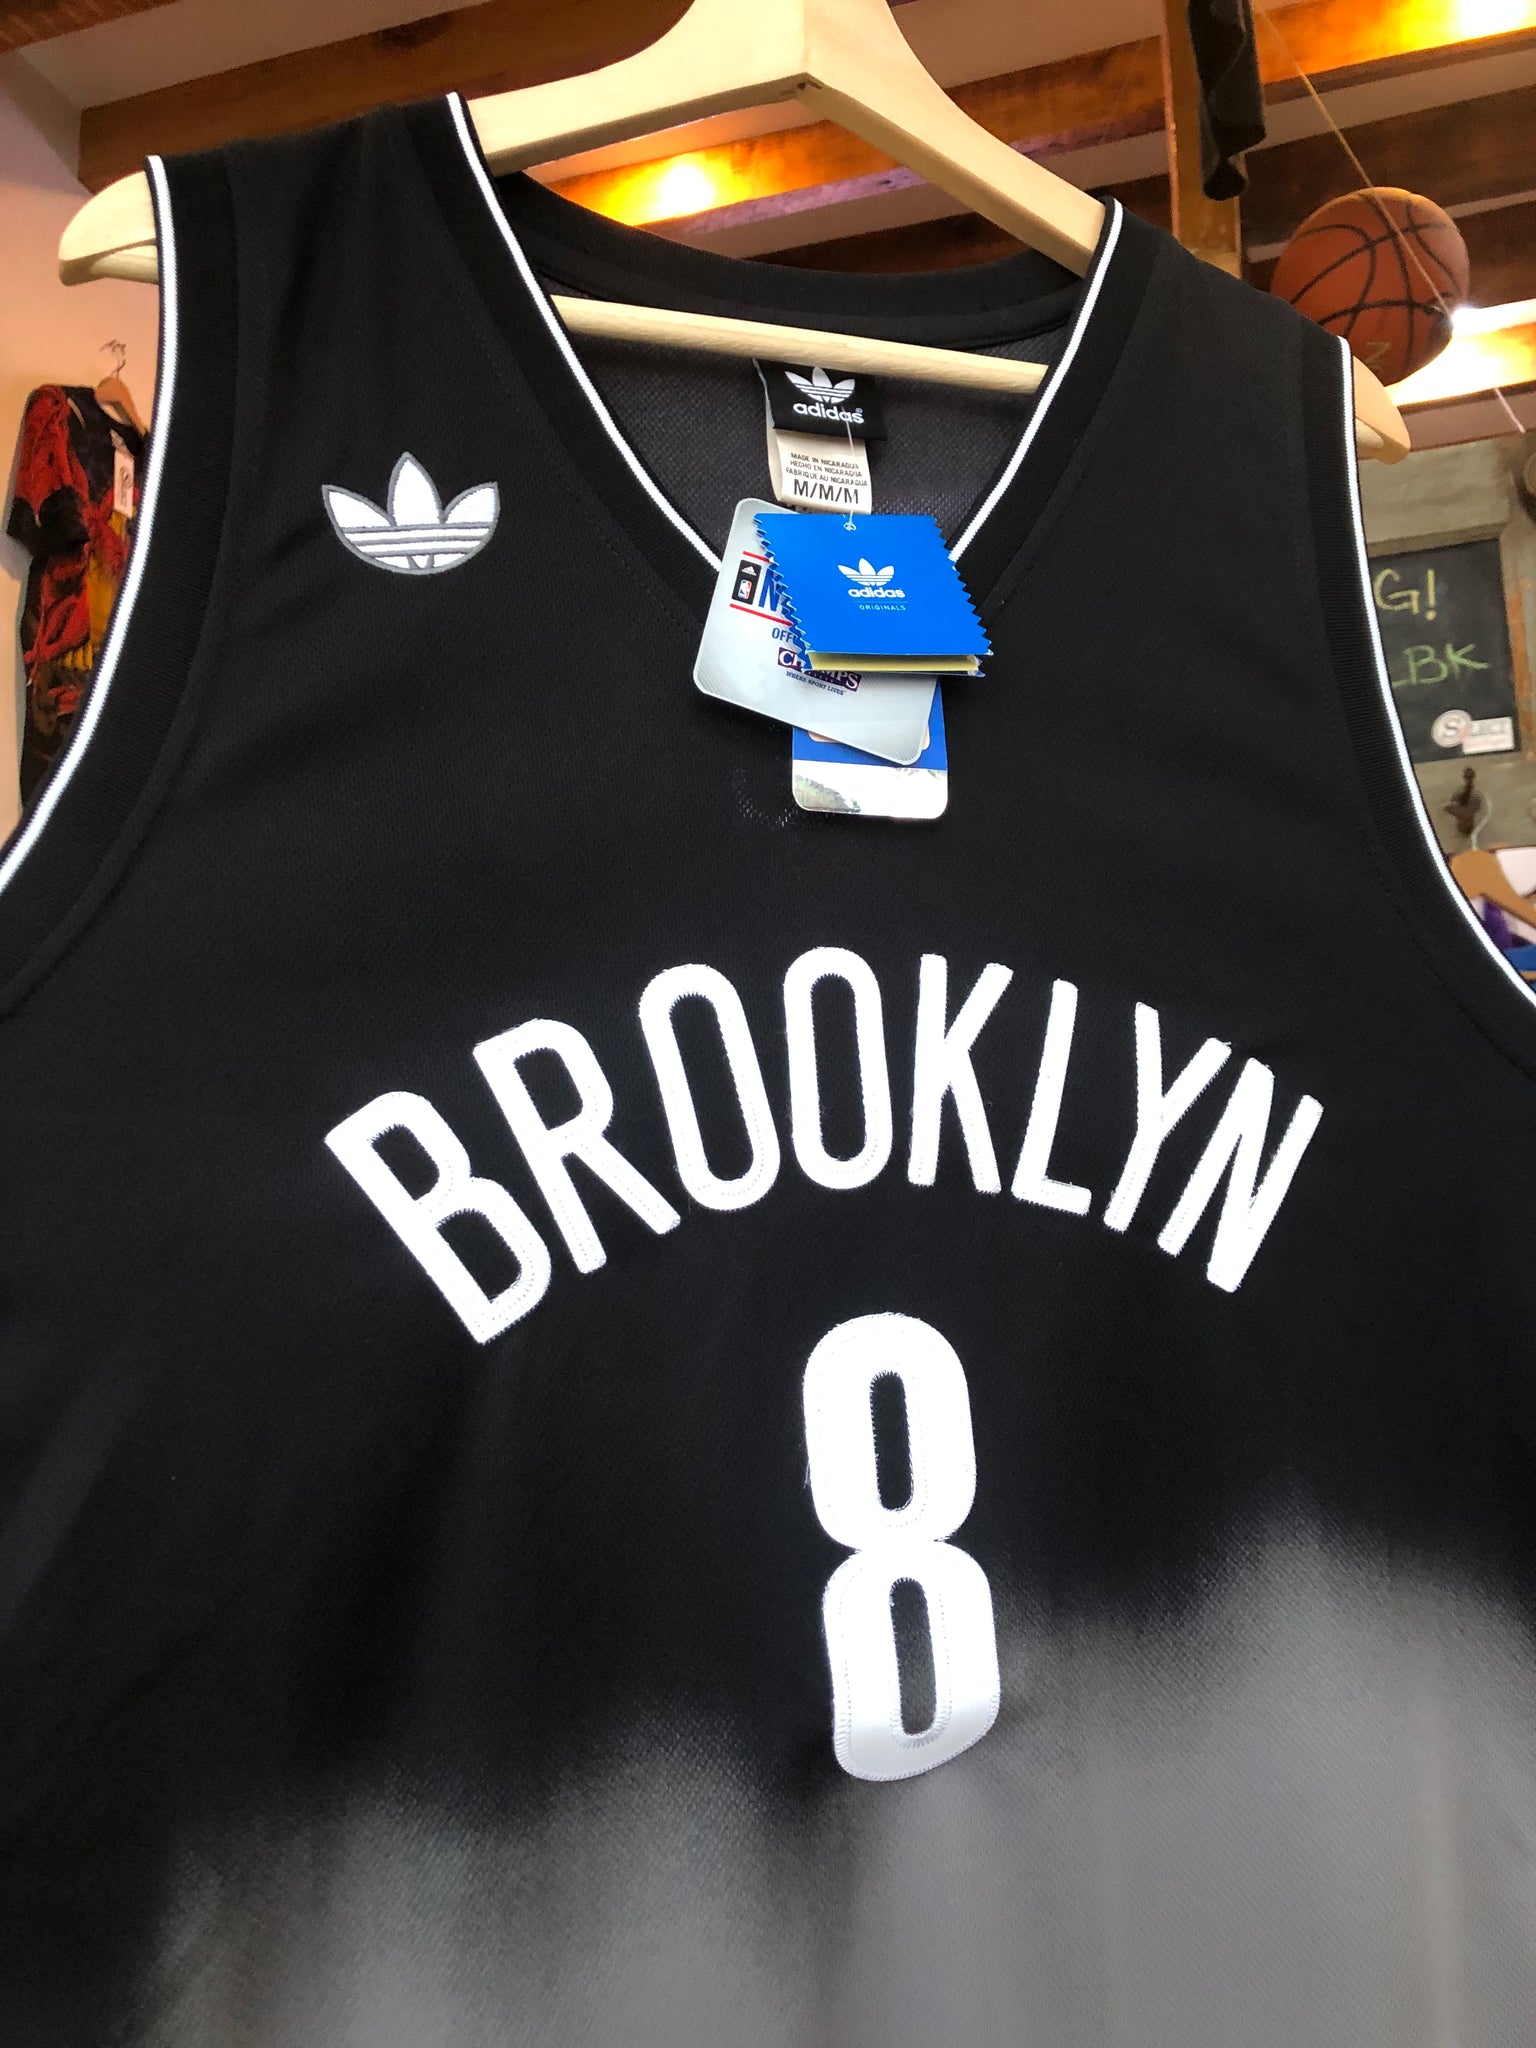 Brooklyn Nets NBA *Williams* Adidas Shirt L